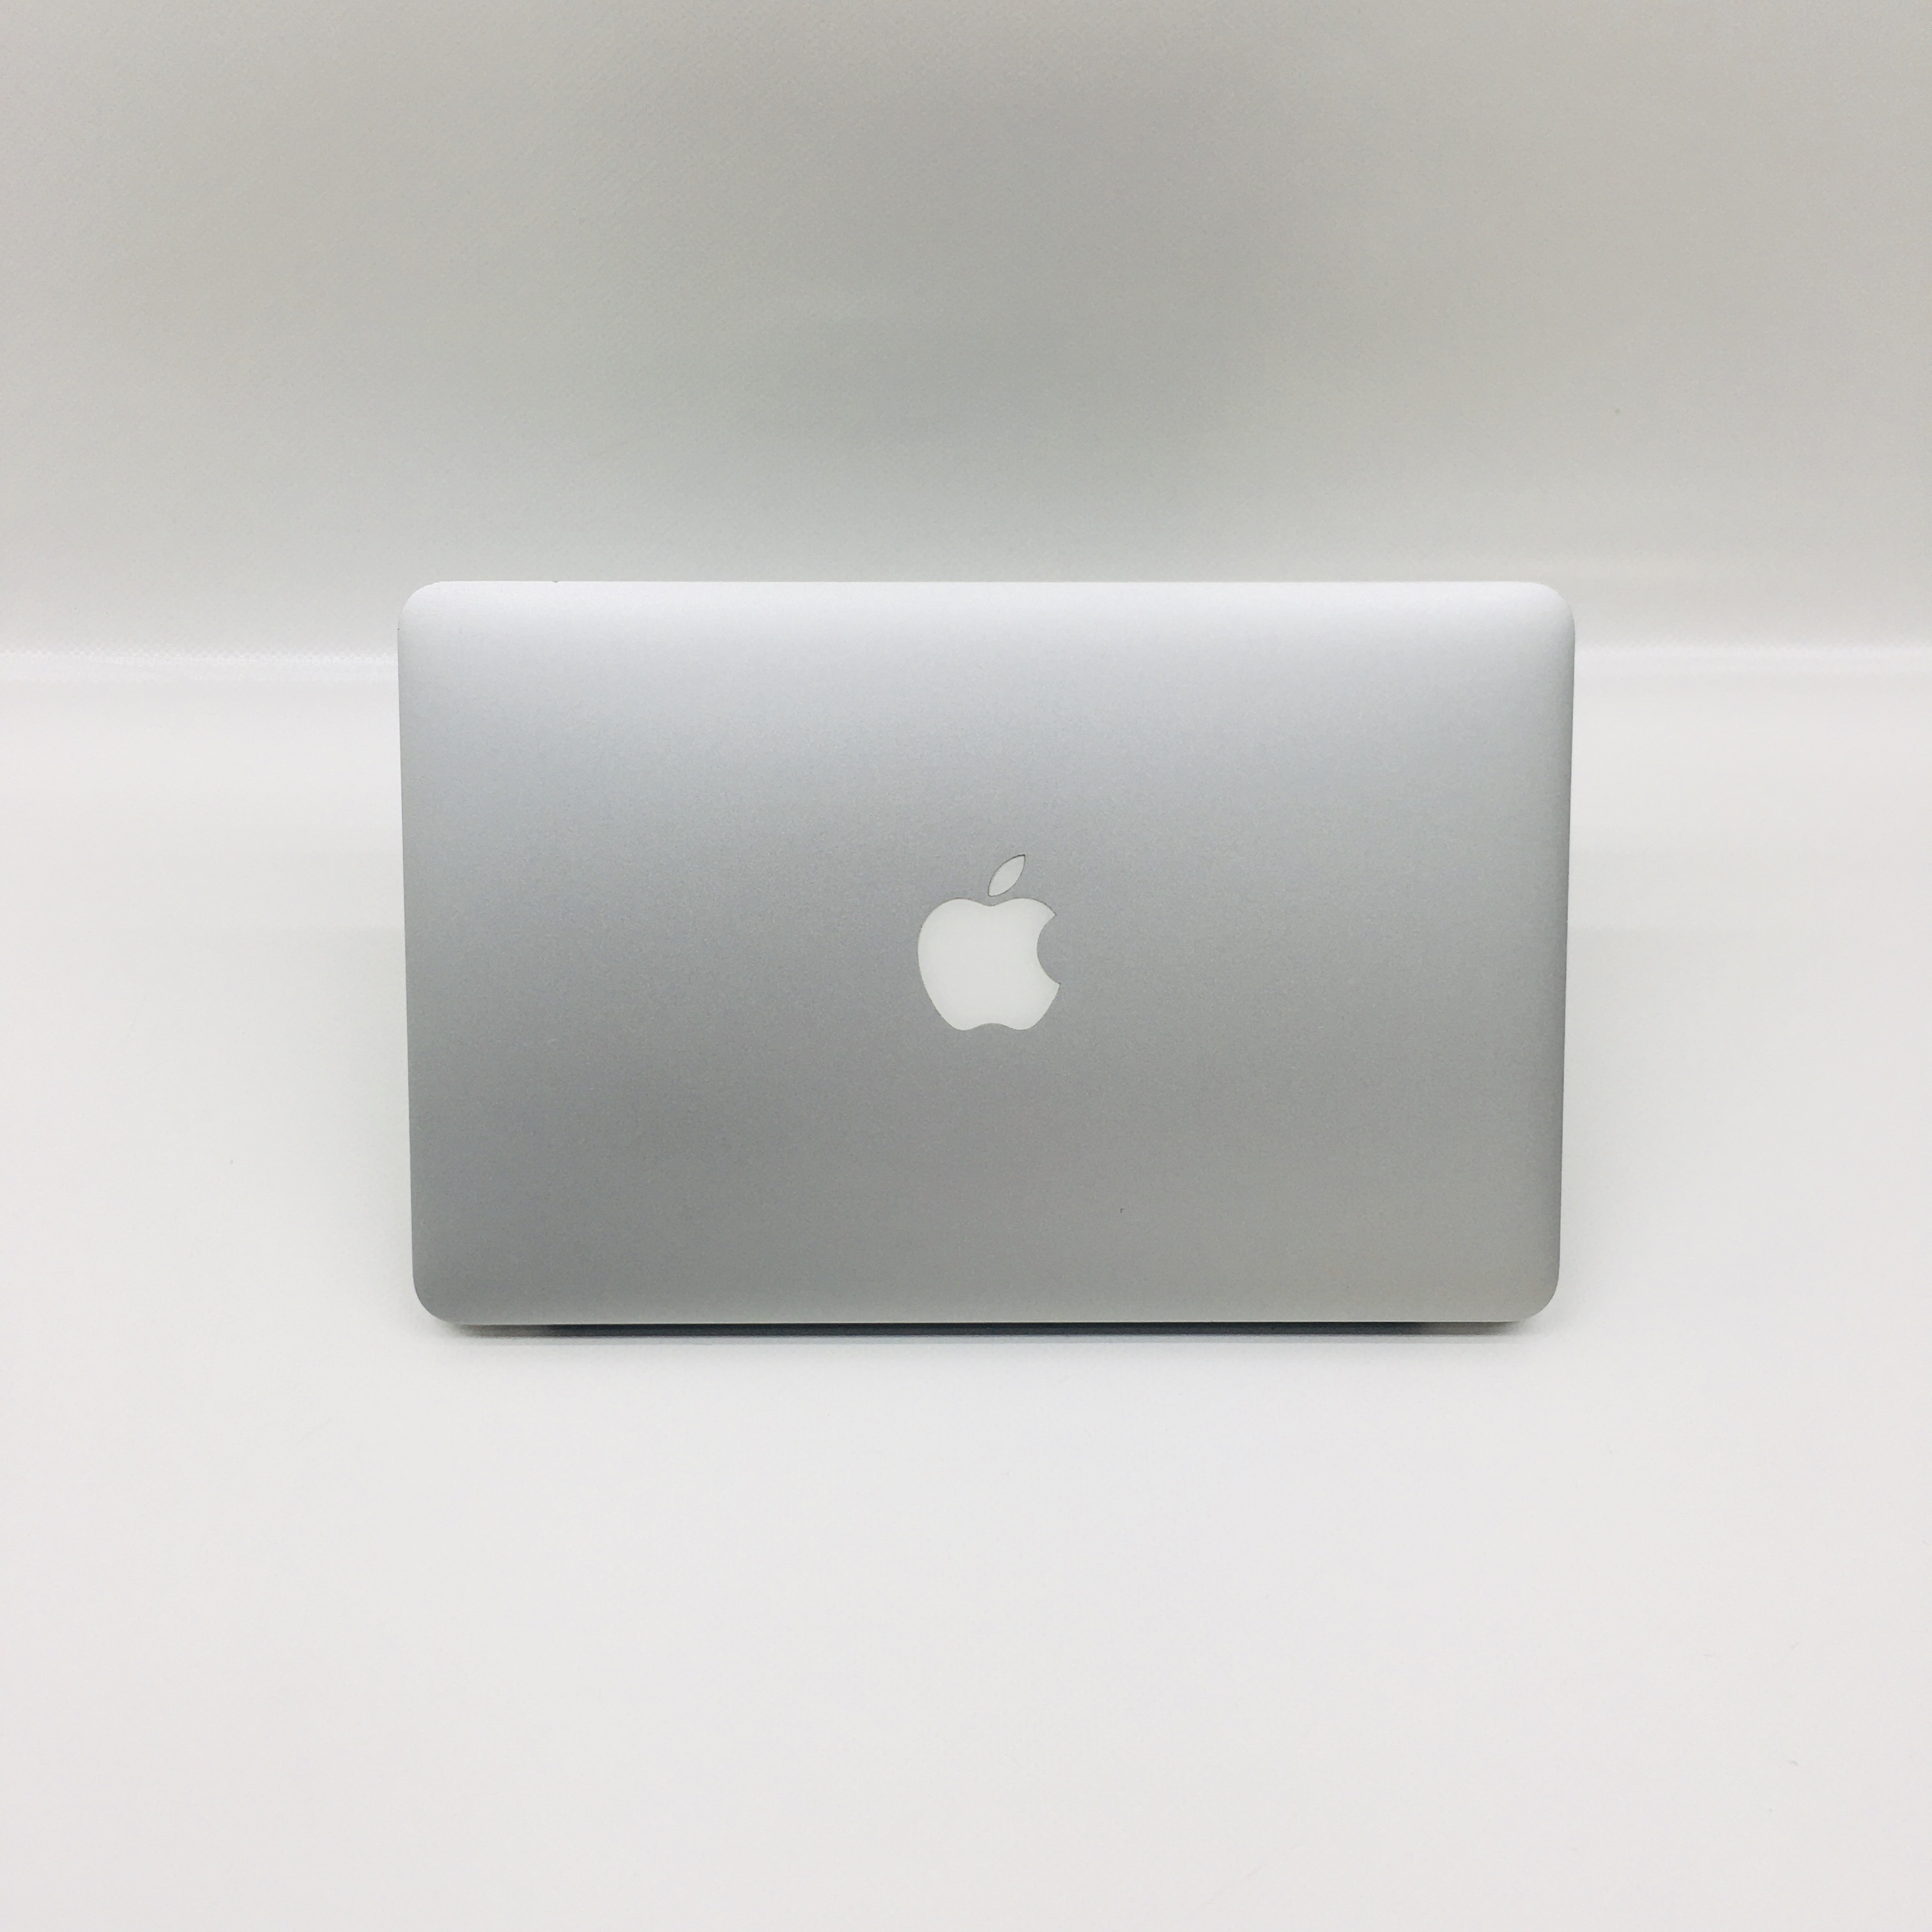 MacBook Air 11" Mid 2012 (Intel Core i5 1.7 GHz 4 GB RAM 128 GB SSD), Intel Core i5 1.7 GHz, 4 GB RAM, 128 GB SSD, image 4